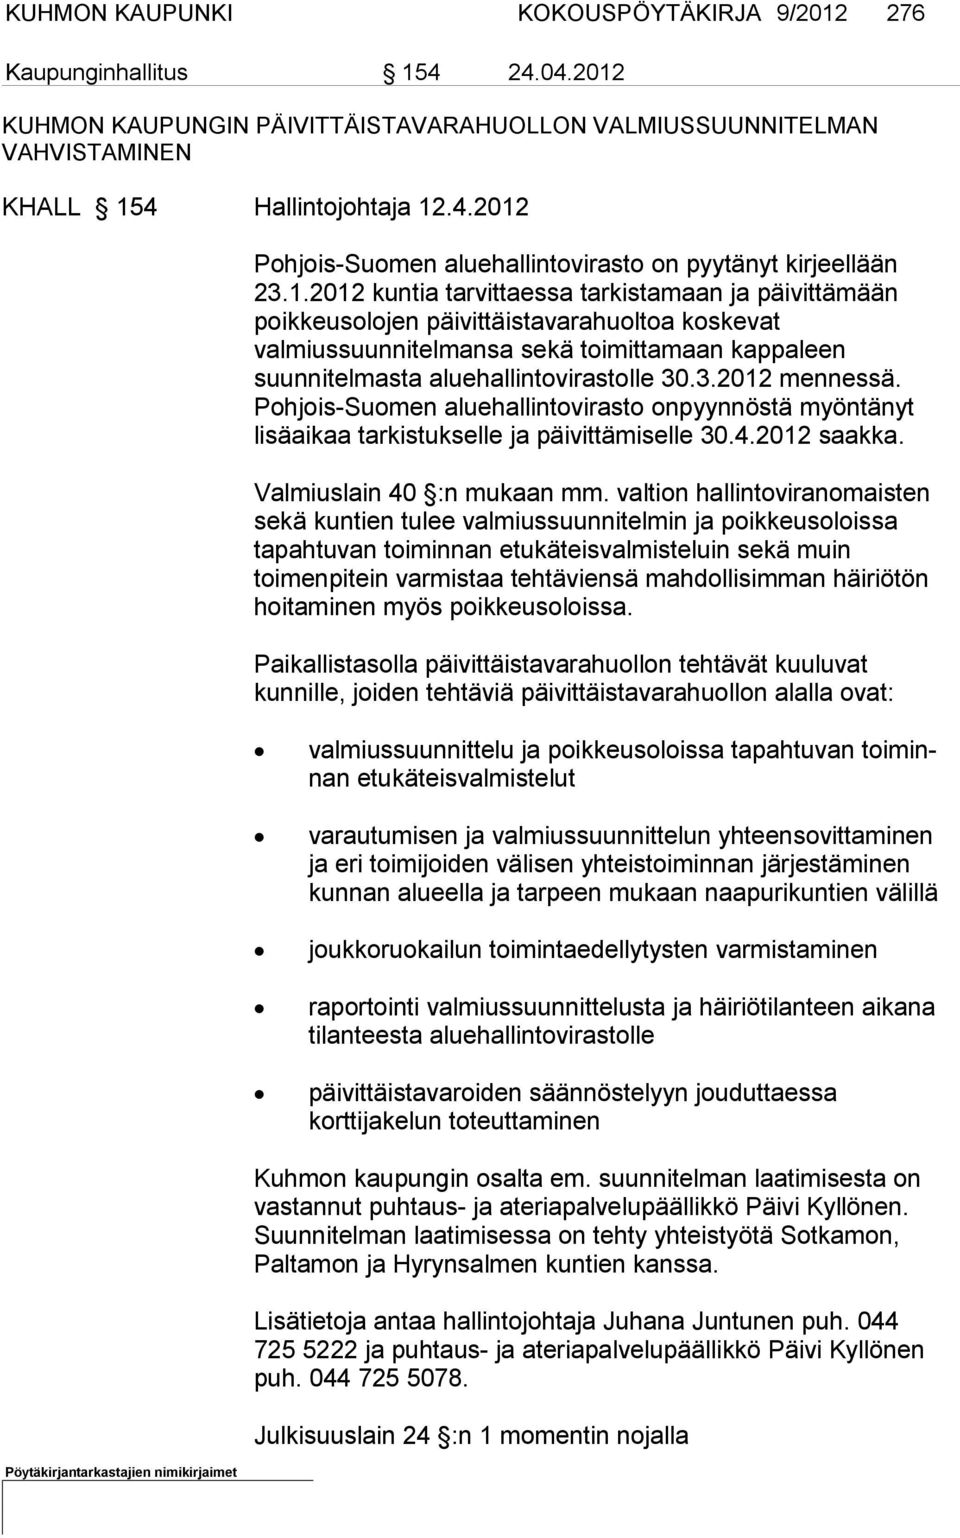 3.2012 mennessä. Pohjois-Suomen aluehallintovirasto onpyynnöstä myöntänyt lisäaikaa tarkistukselle ja päivittämiselle 30.4.2012 saakka. Valmiuslain 40 :n mukaan mm.